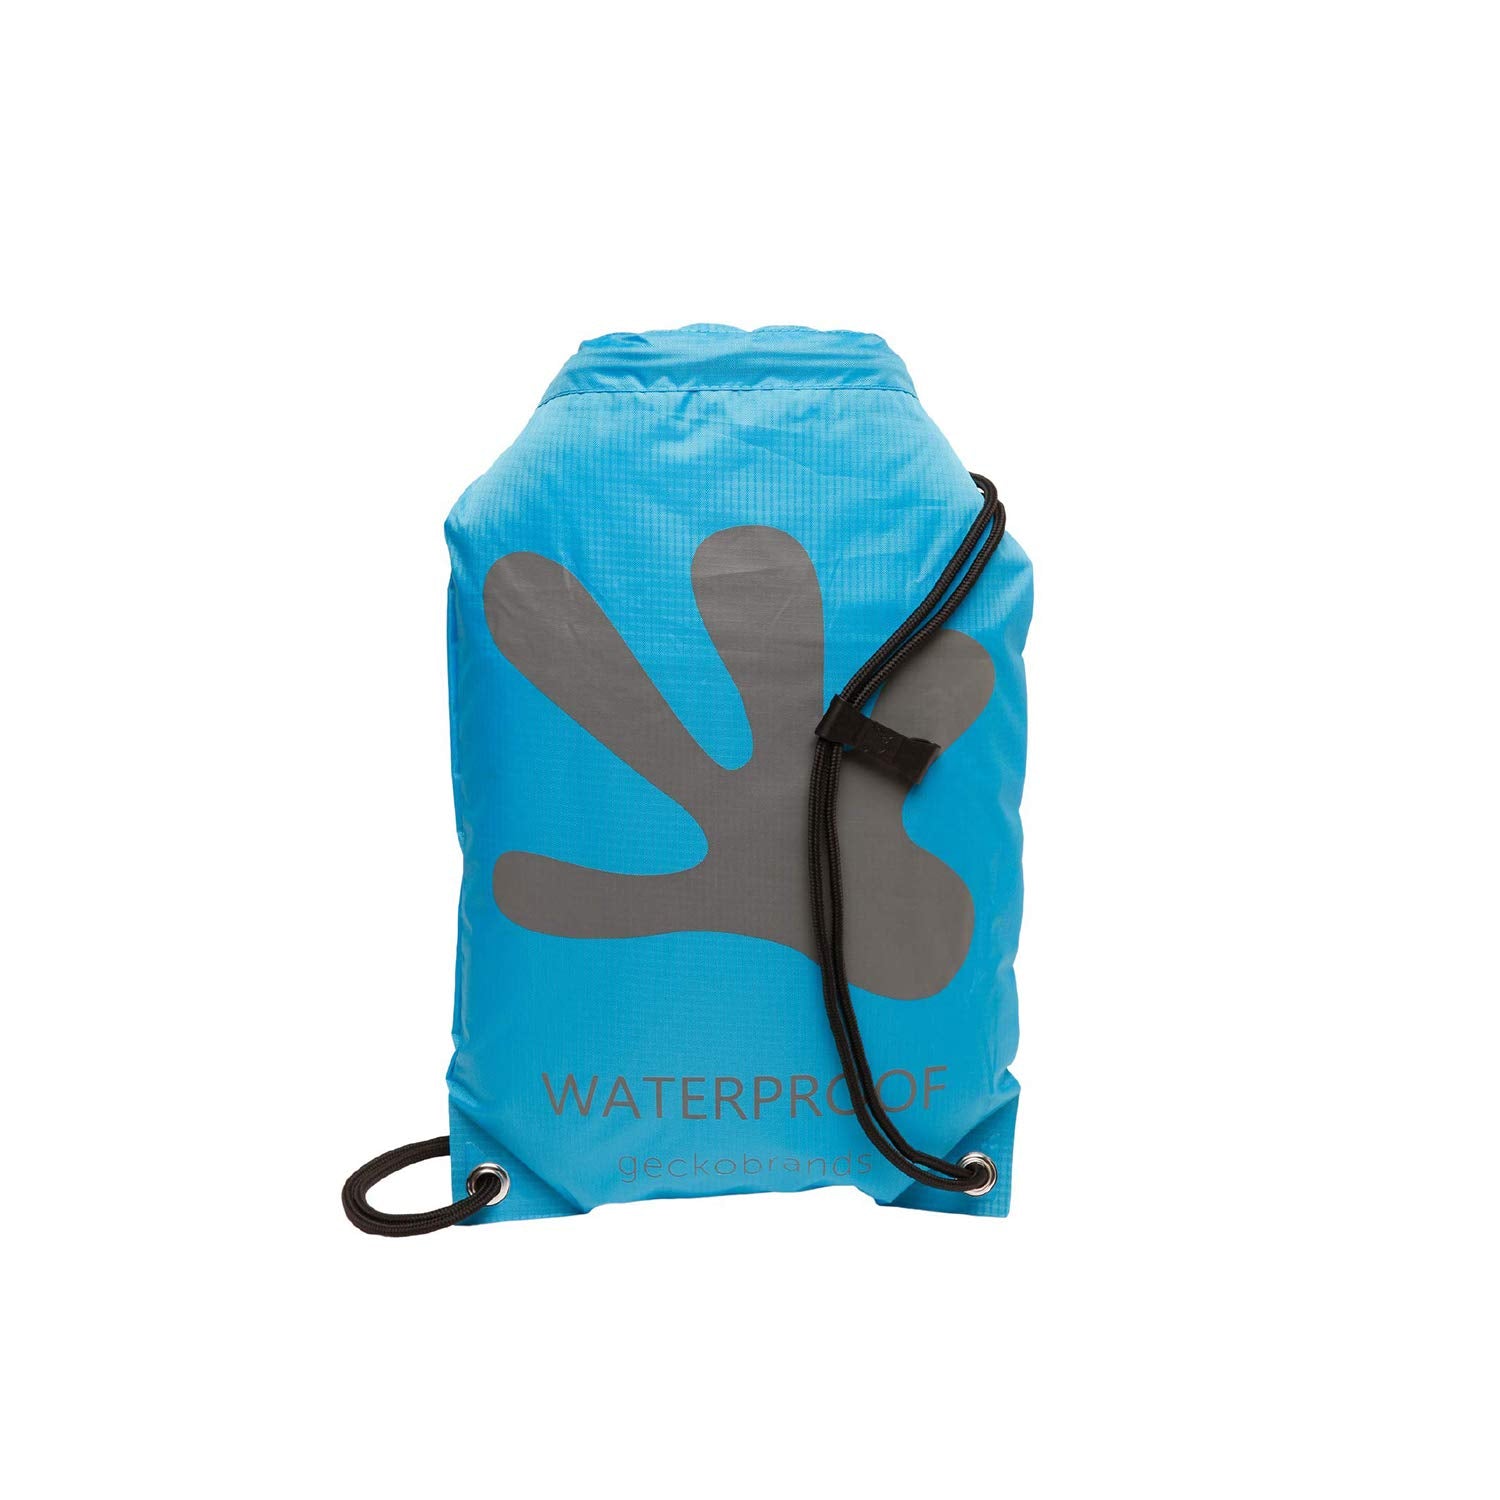 Waterproof backpack Drawstring